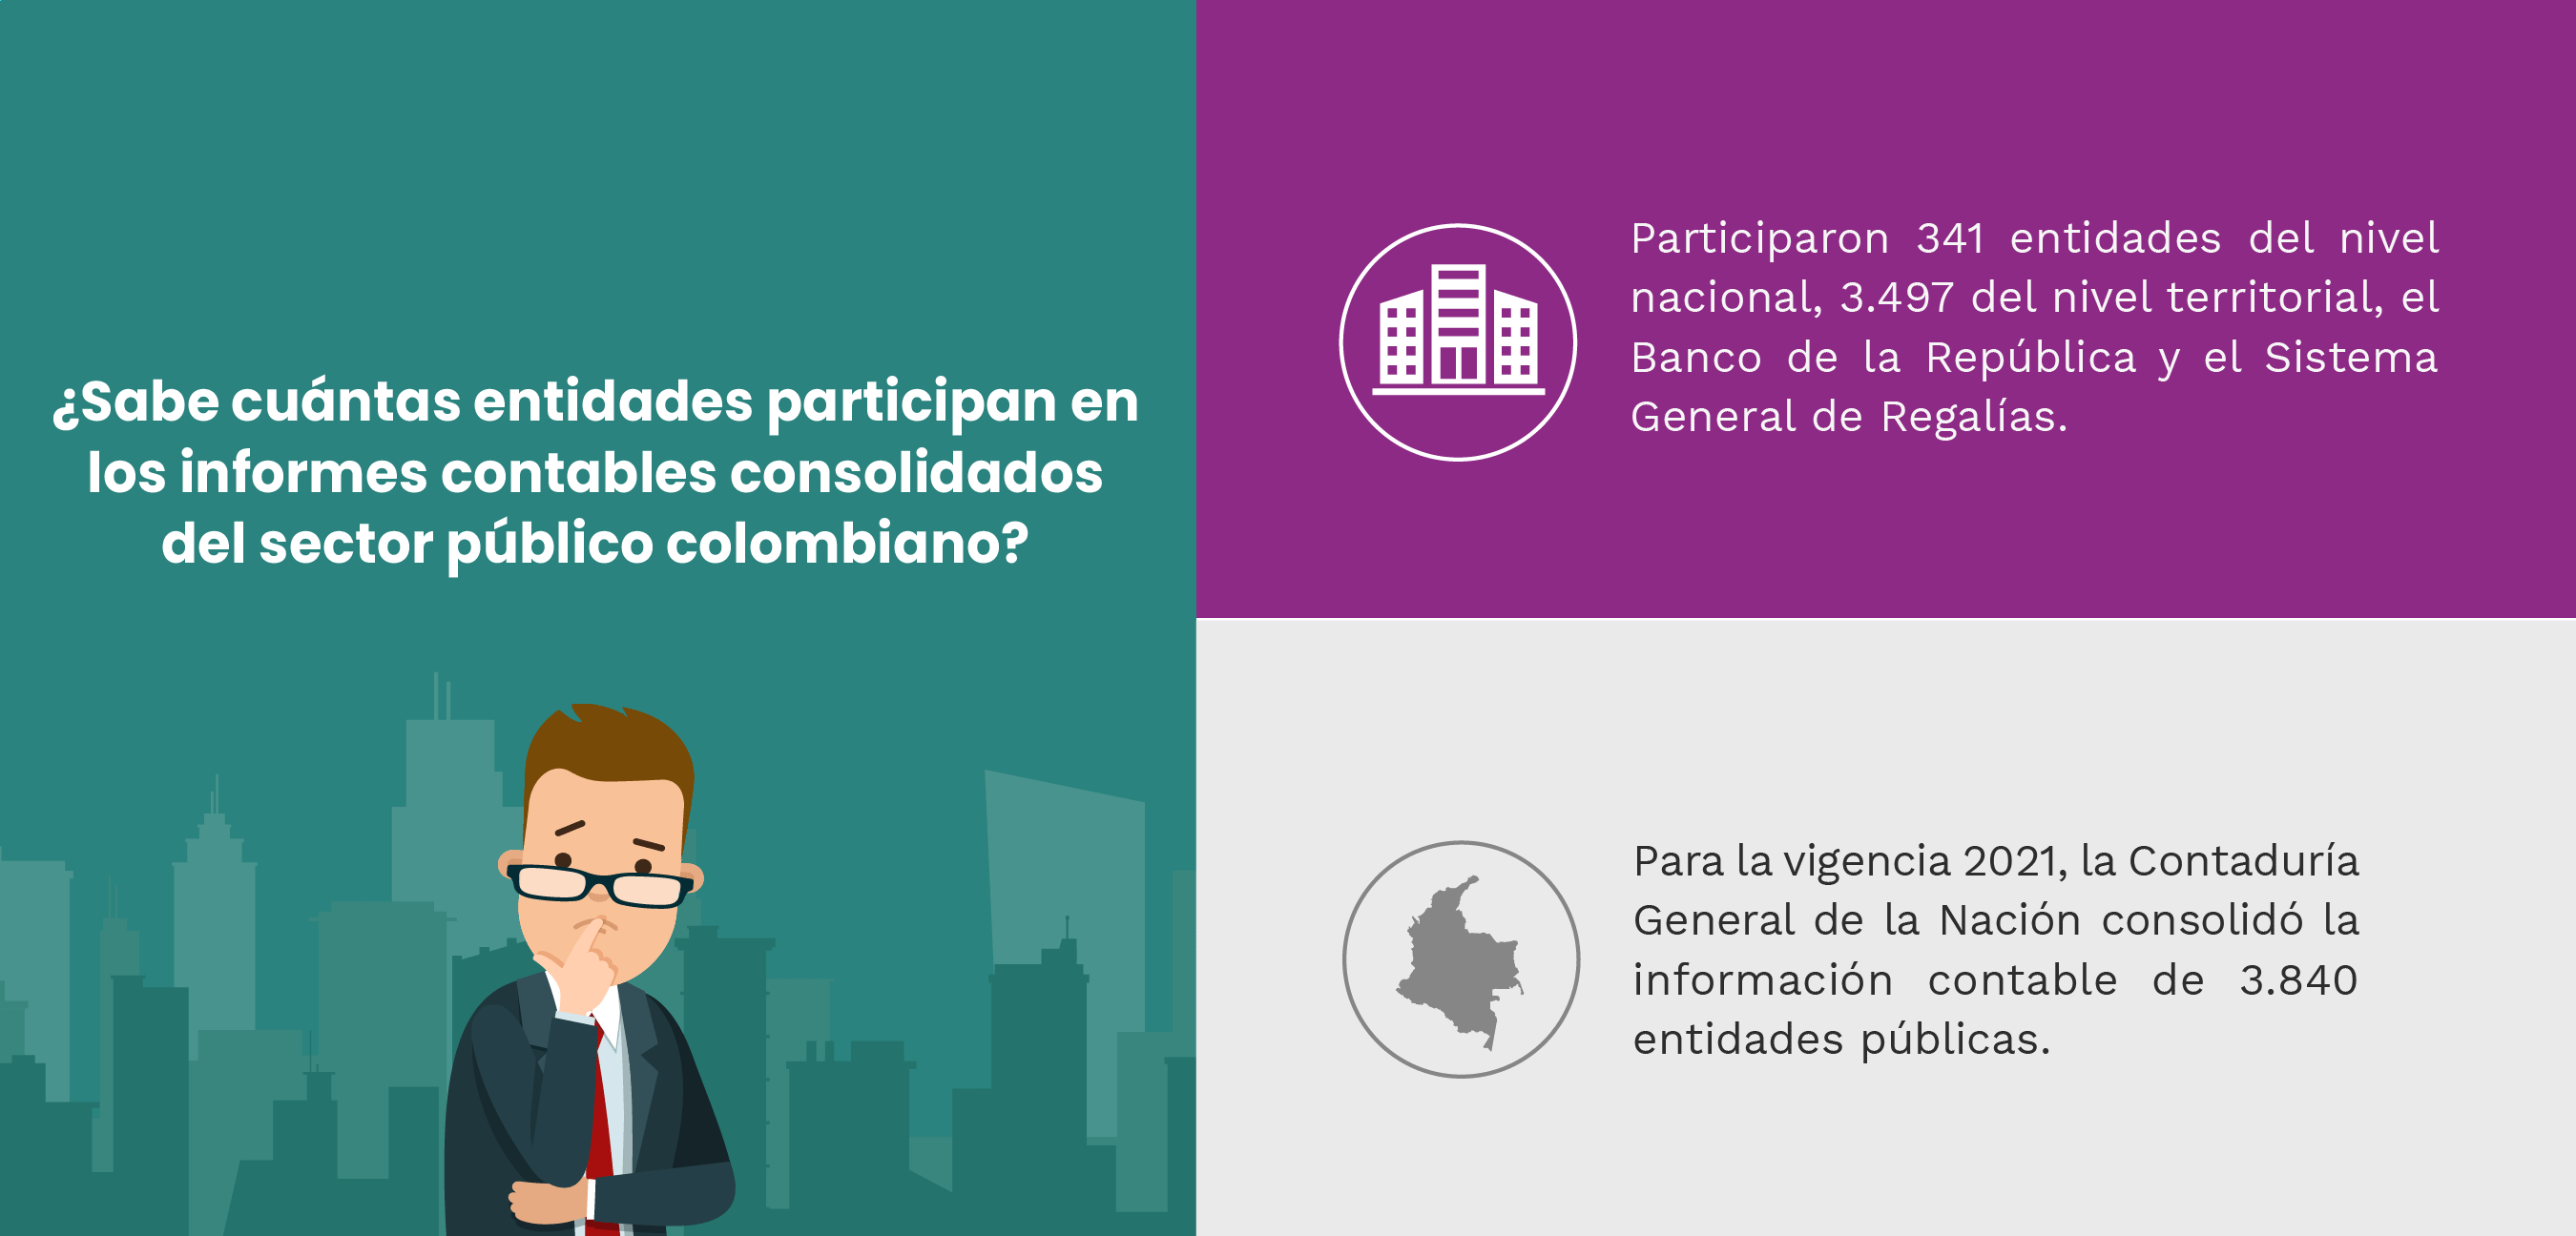 Sabe cuántas entidades participan en los informes contables consolidados del sector público colombiano